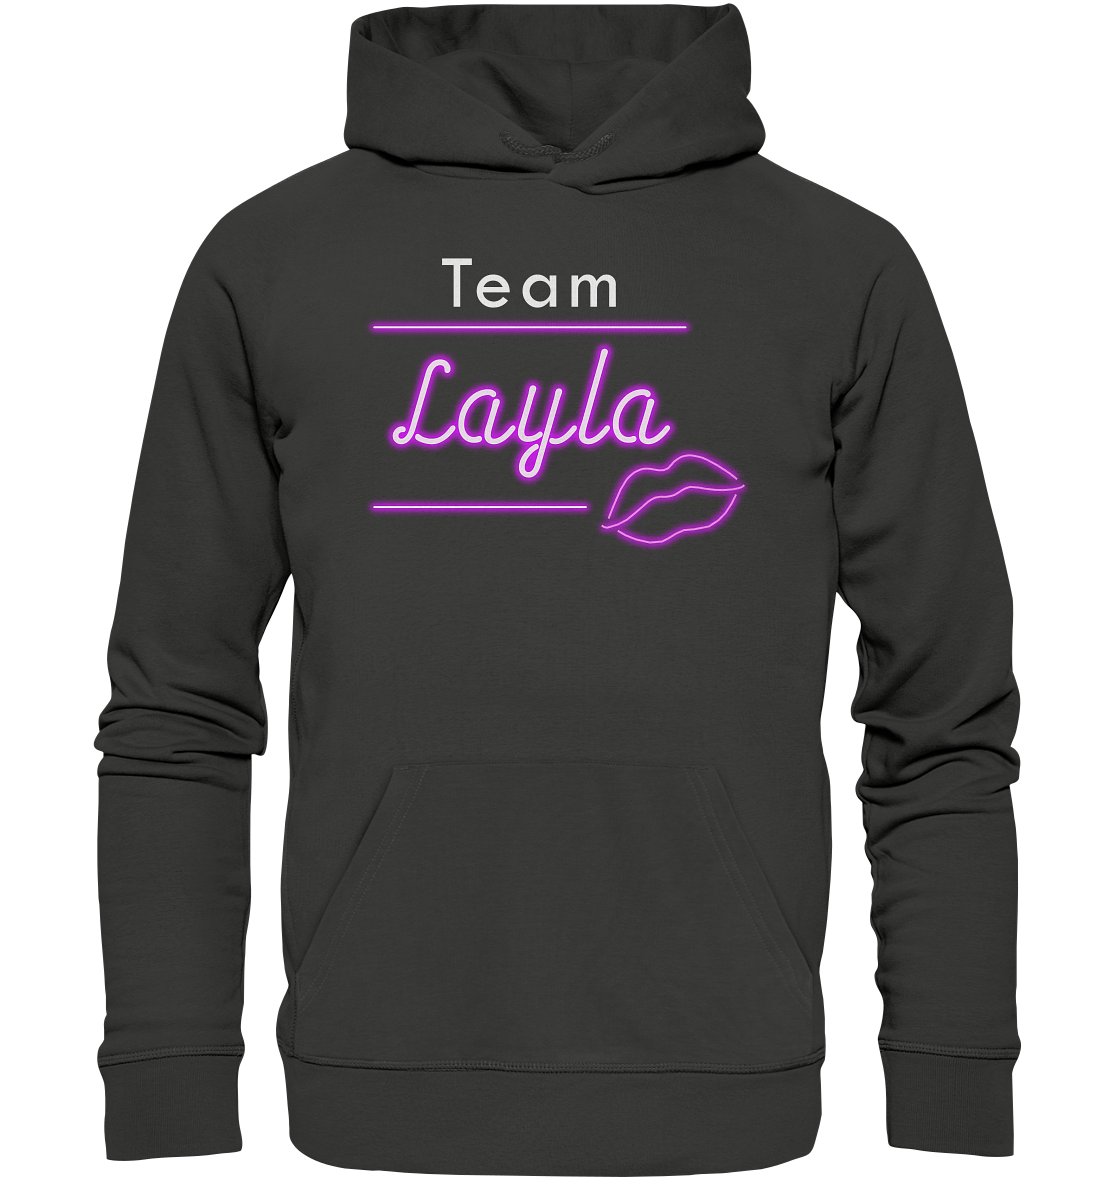 Willkommen im Team “Layla” das ultimative Partyshirt für Mallorca oder Volksfest – Premium Unisex Hoodie